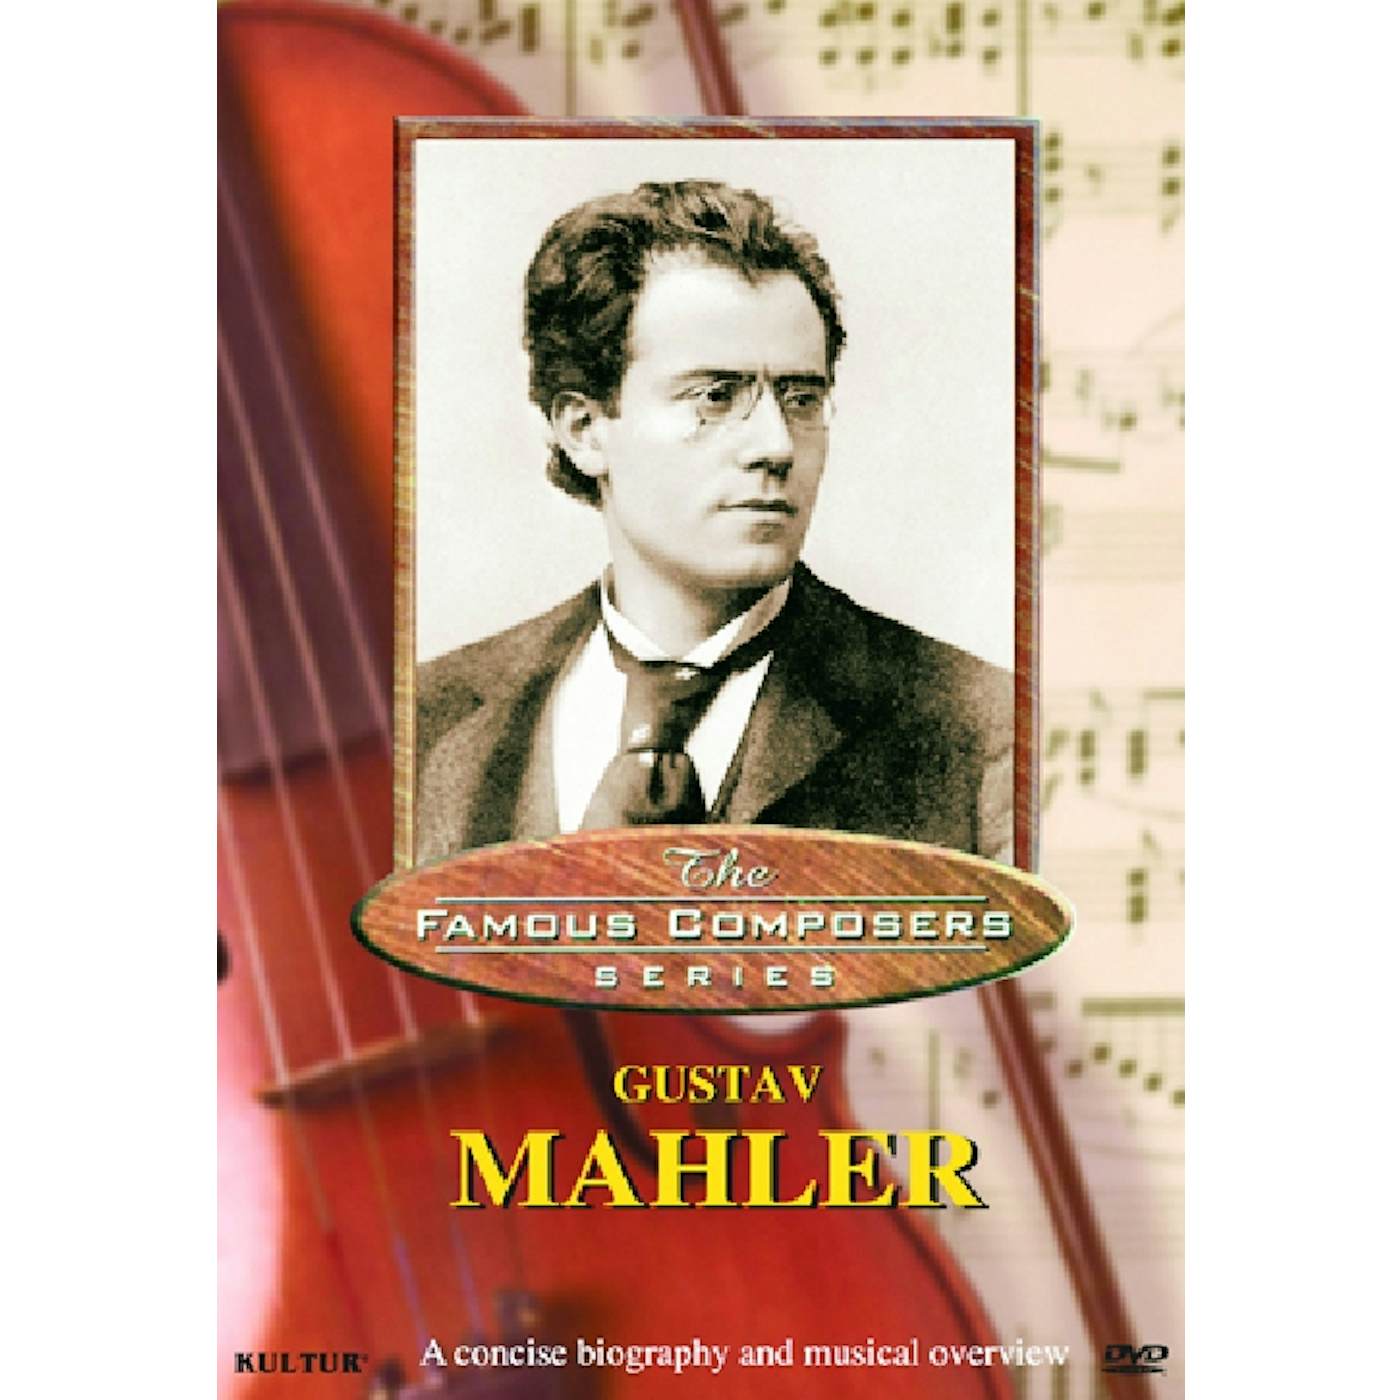 Gustav Mahler FAMOUS COMPOSERS DVD